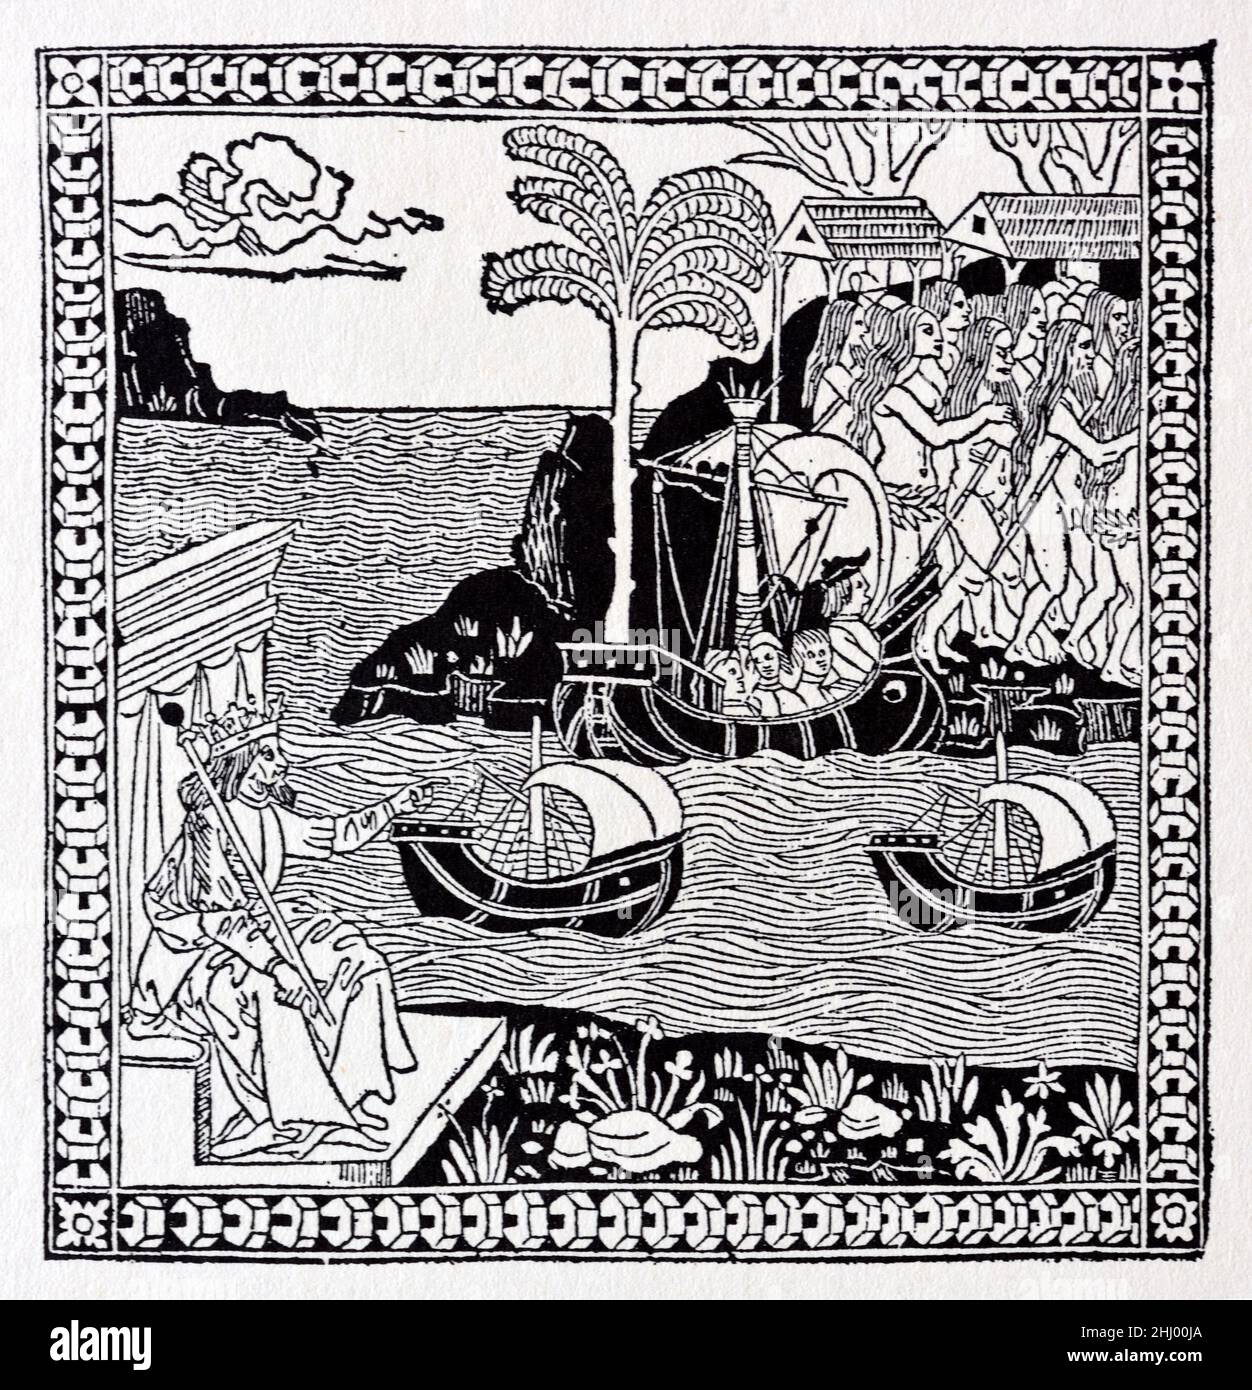 Corte en madera de 1493 mostrando la llegada de Cristóbal Colón al Cabribbean, las Indias Occidentales, las Américas o el Nuevo Mundo in1492. La ilustración muestra al rey español Fernando II de Aragón sentado en su trono abajo a la izquierda. Impresión, grabado o ilustración de madera vintage Foto de stock